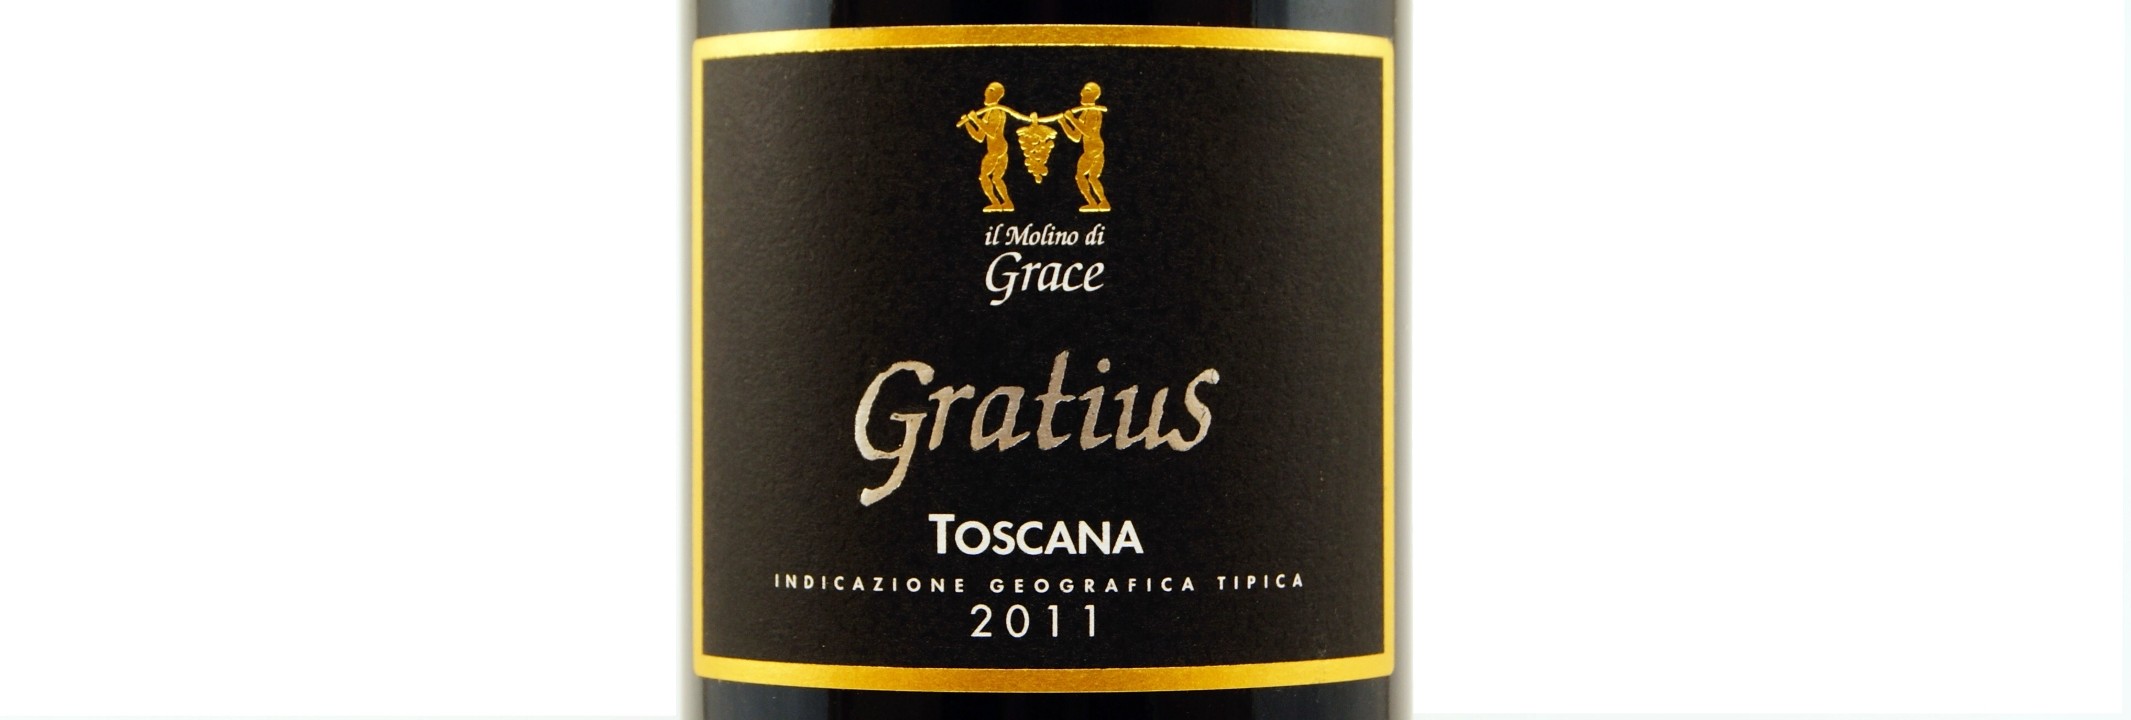 Il Molino de Grace 'Gratius' Tuscan blend 2016